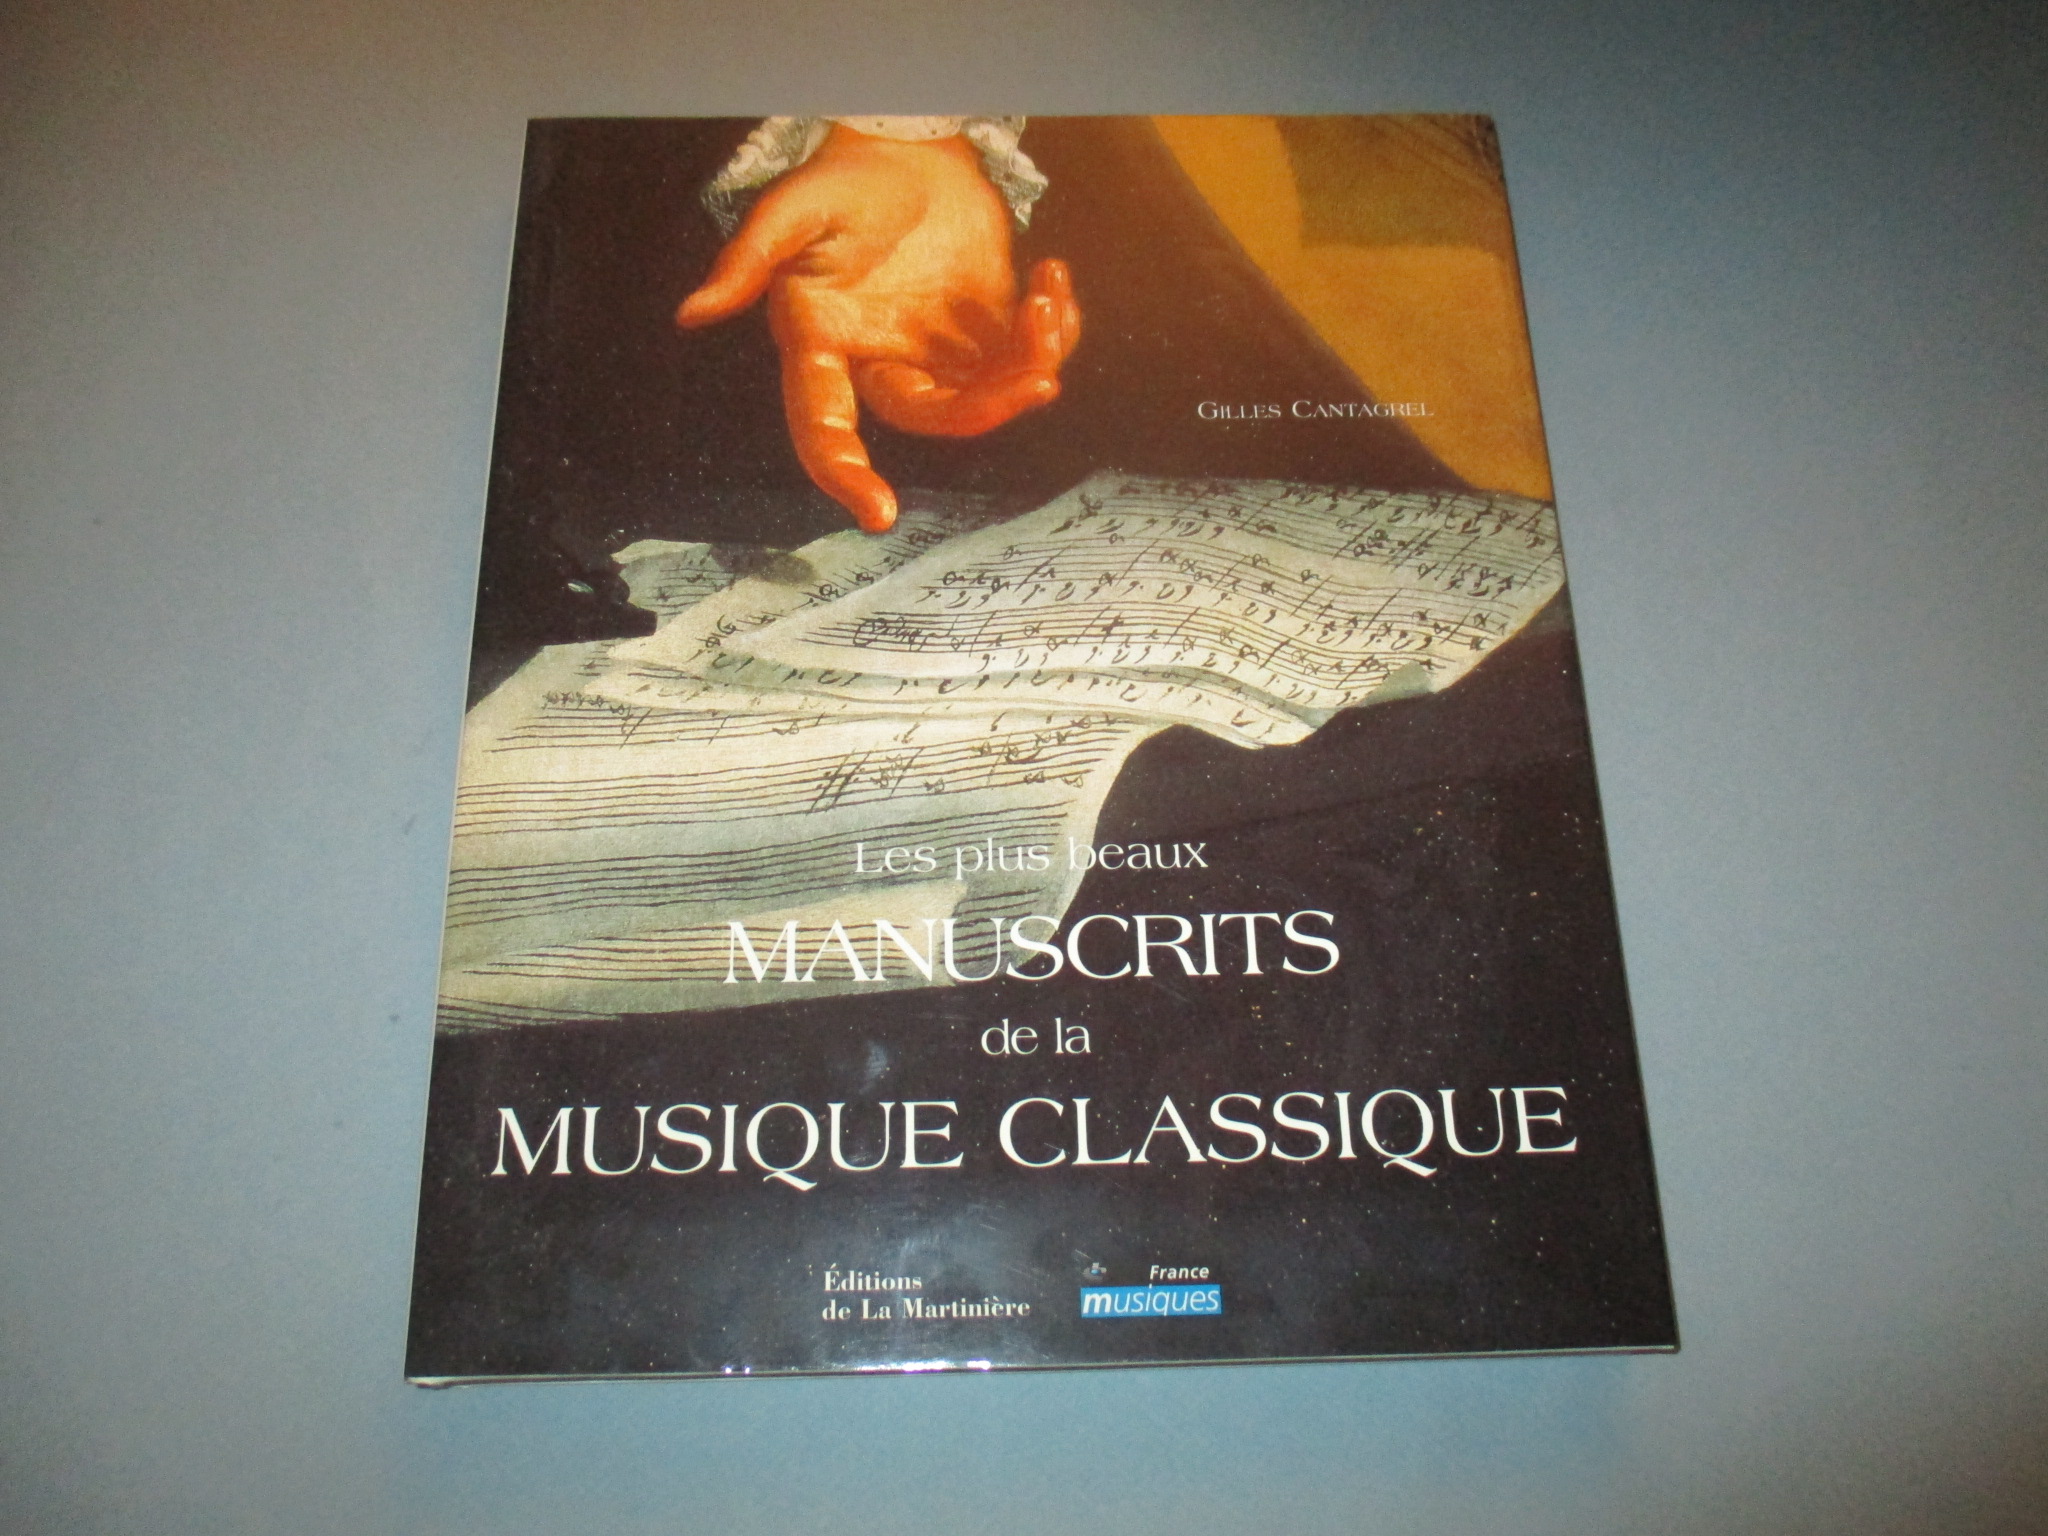 Les plus beaux manuscrits de la musique classique, Gilles Cantagrel, La Martinière France Musiques